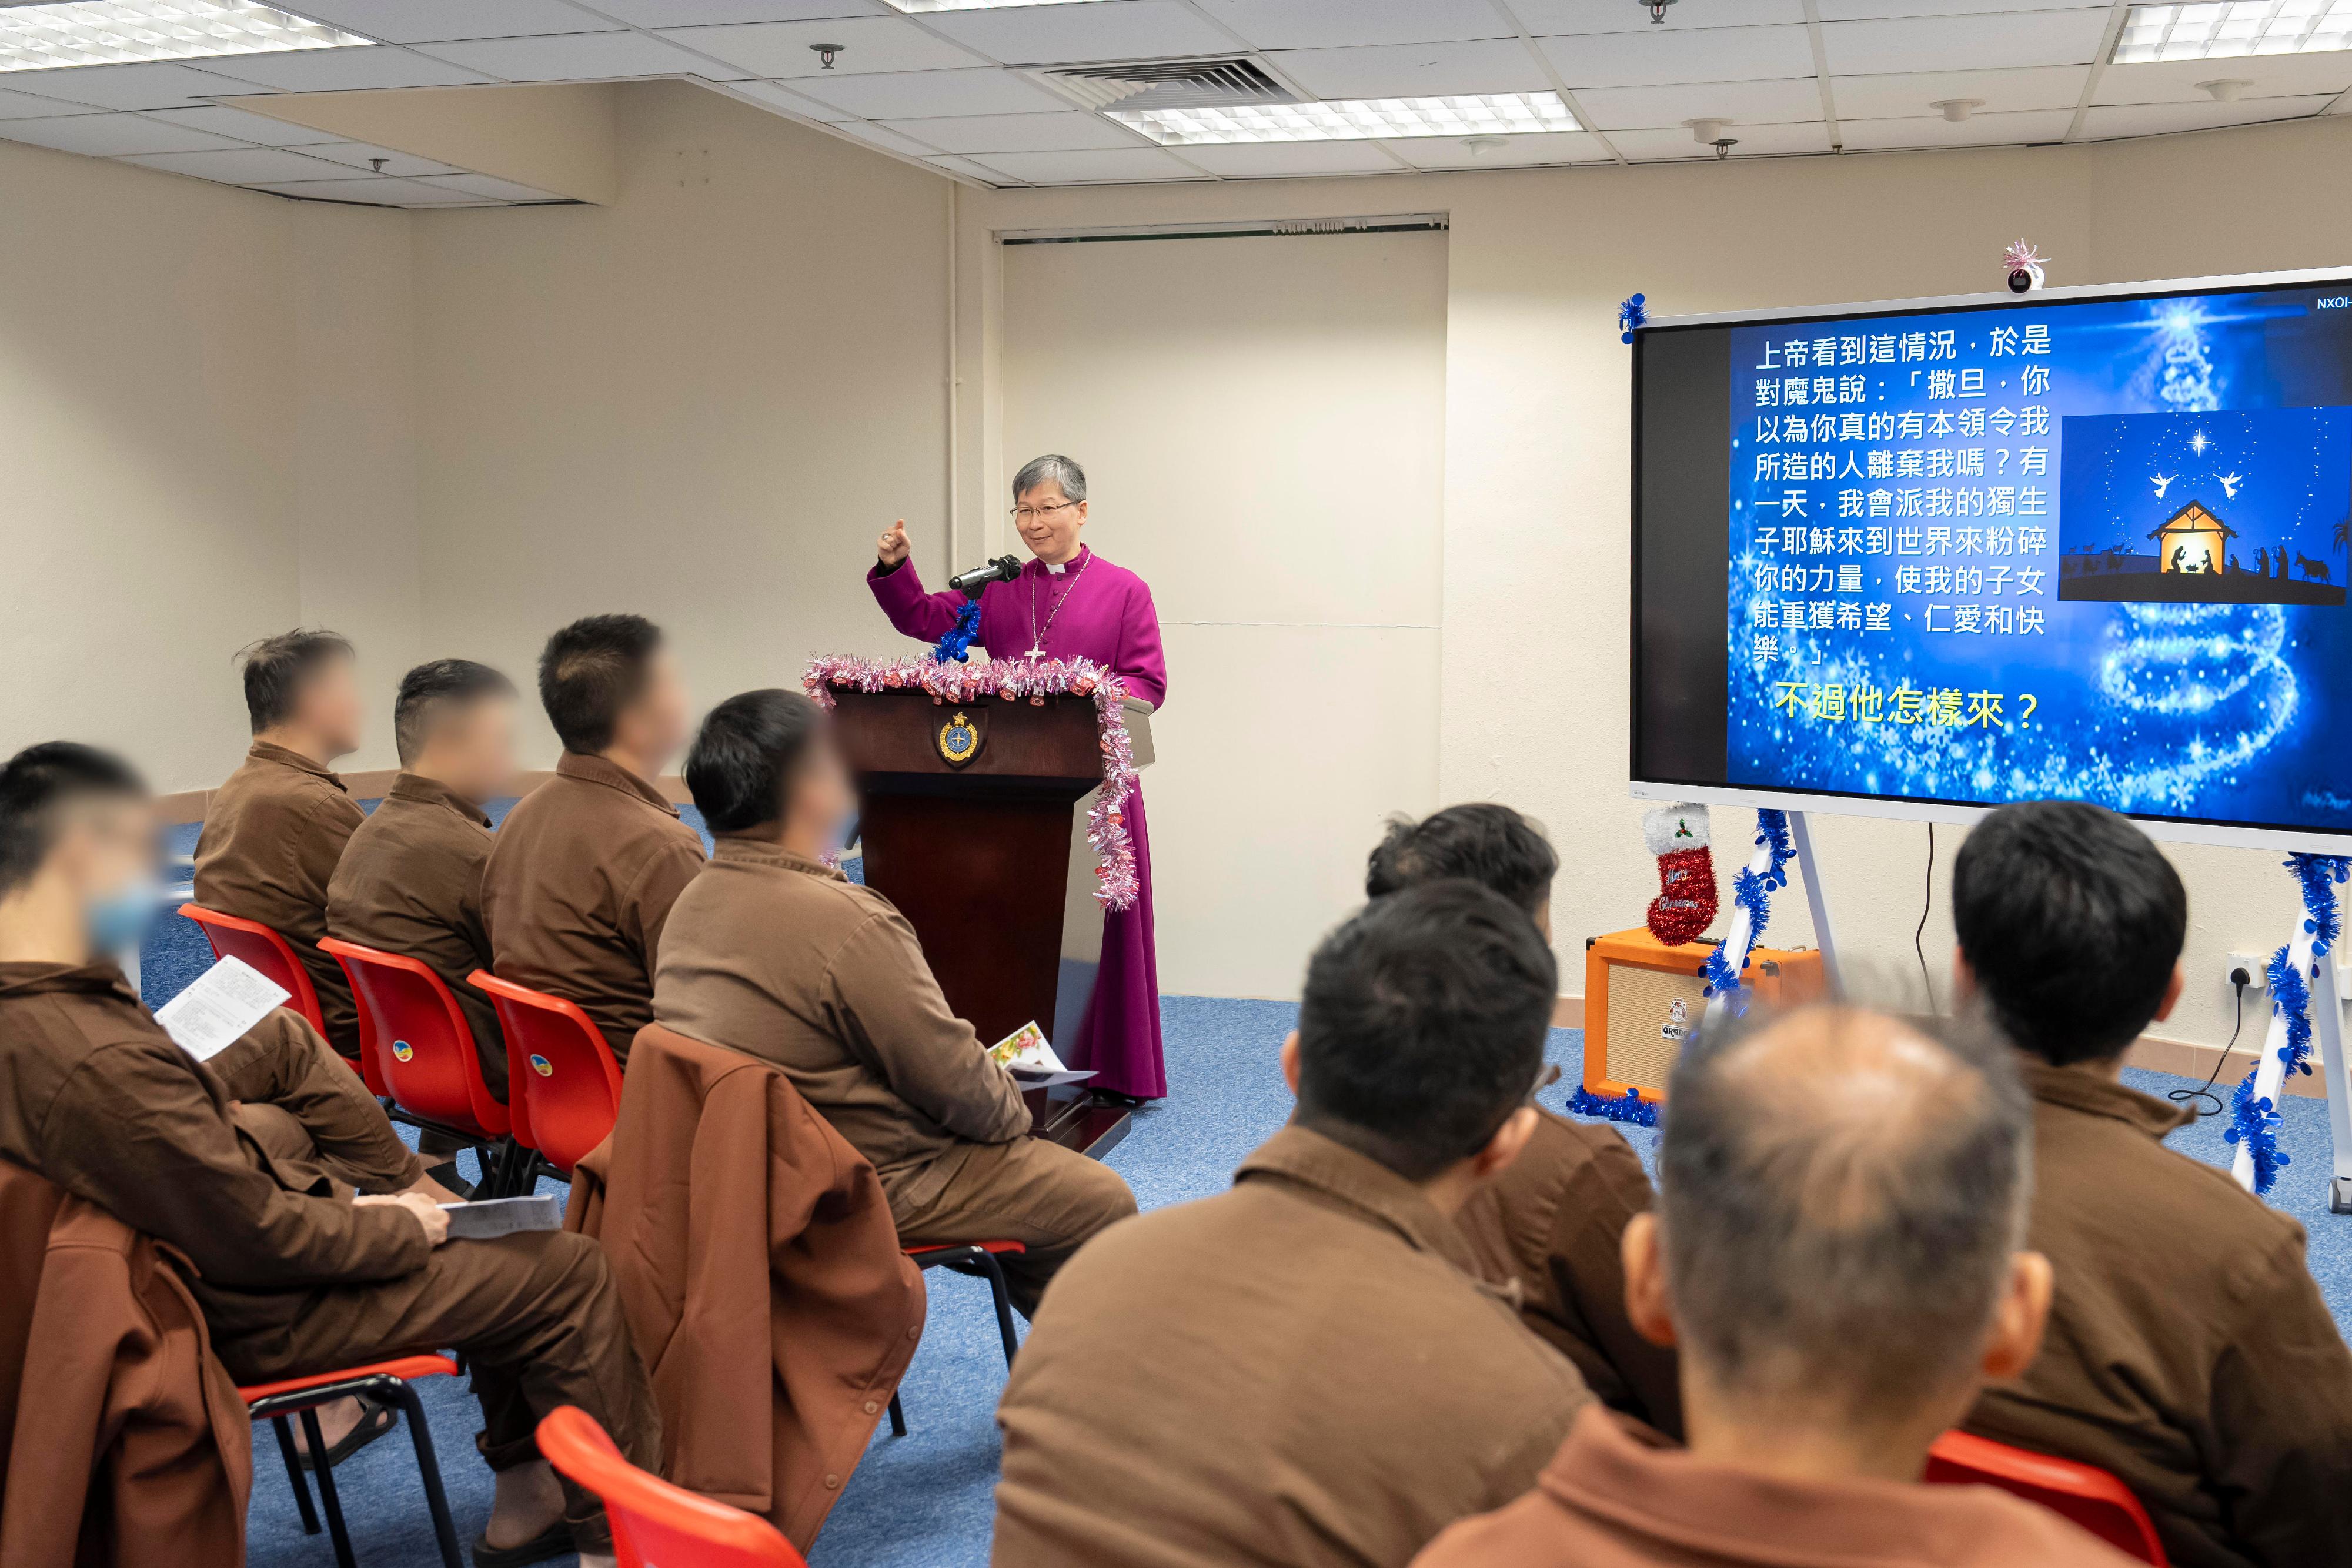 香港聖公會大主教陳謳明於十二月二十一日到白沙灣懲教所主持聖誕崇拜。

